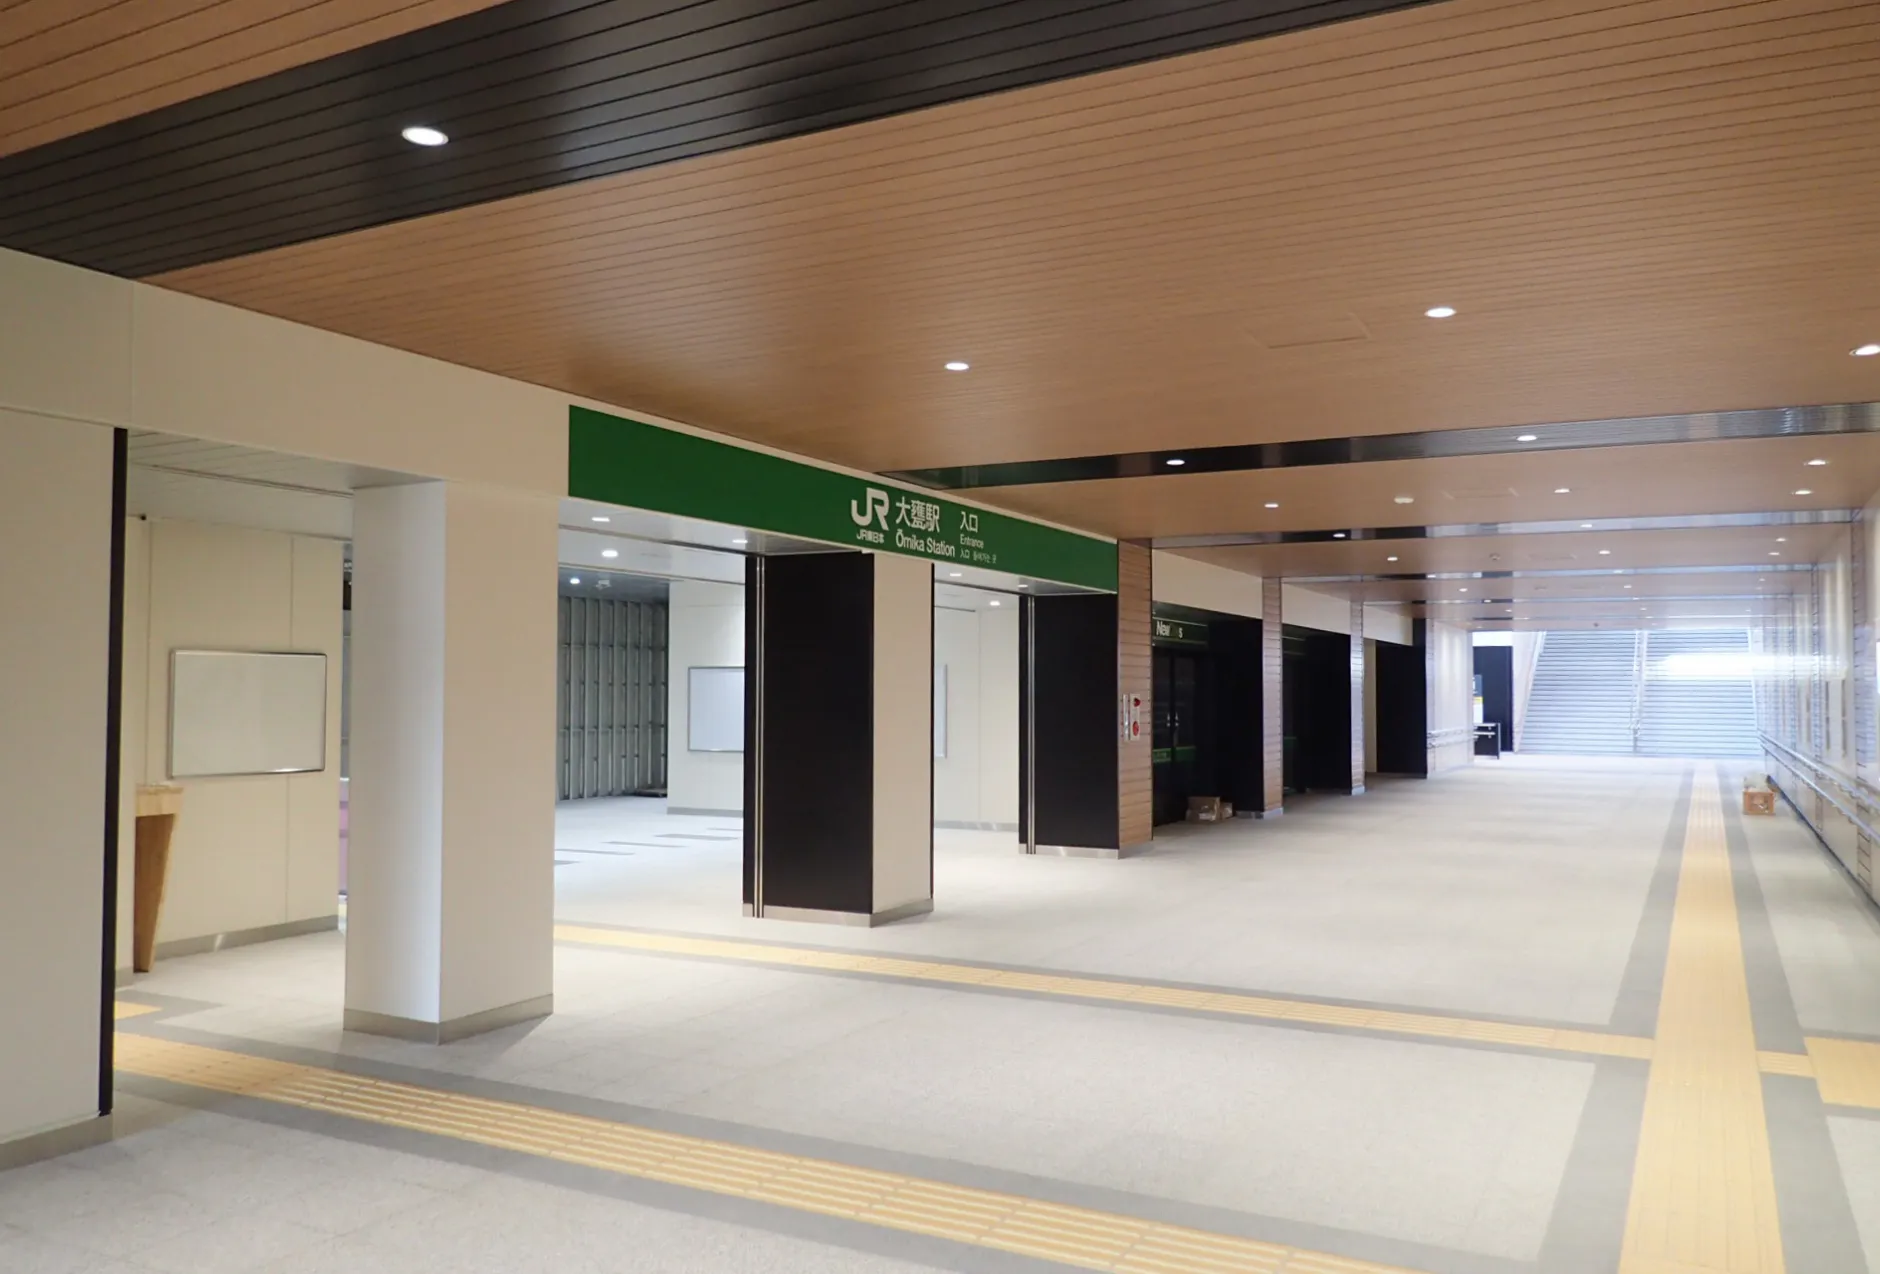 JR常磐線 大甕駅舎改築及び自由通路新設工事のサムネイル画像です